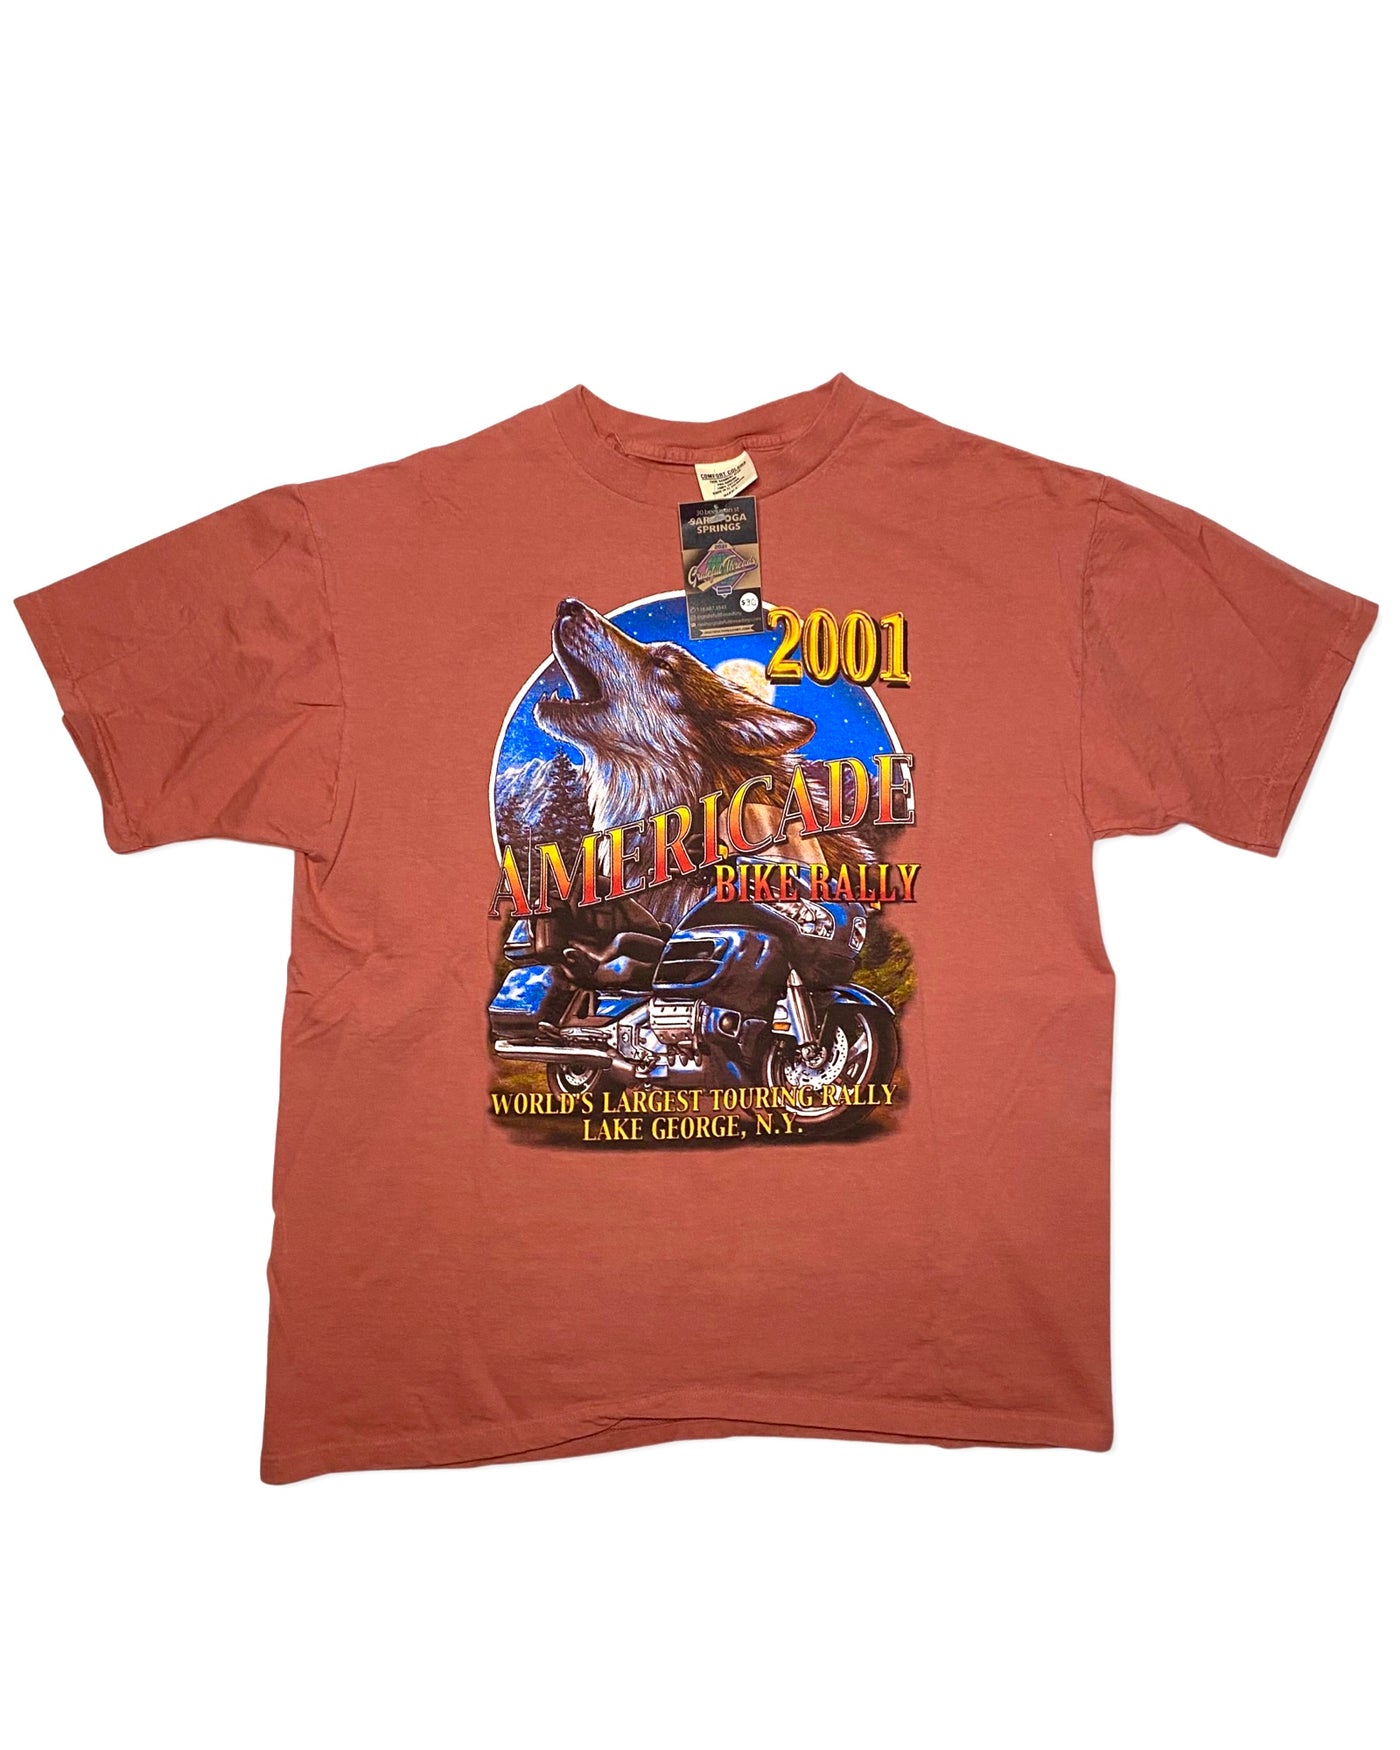 Vintage 2001 Lake George Americans T-Shirt